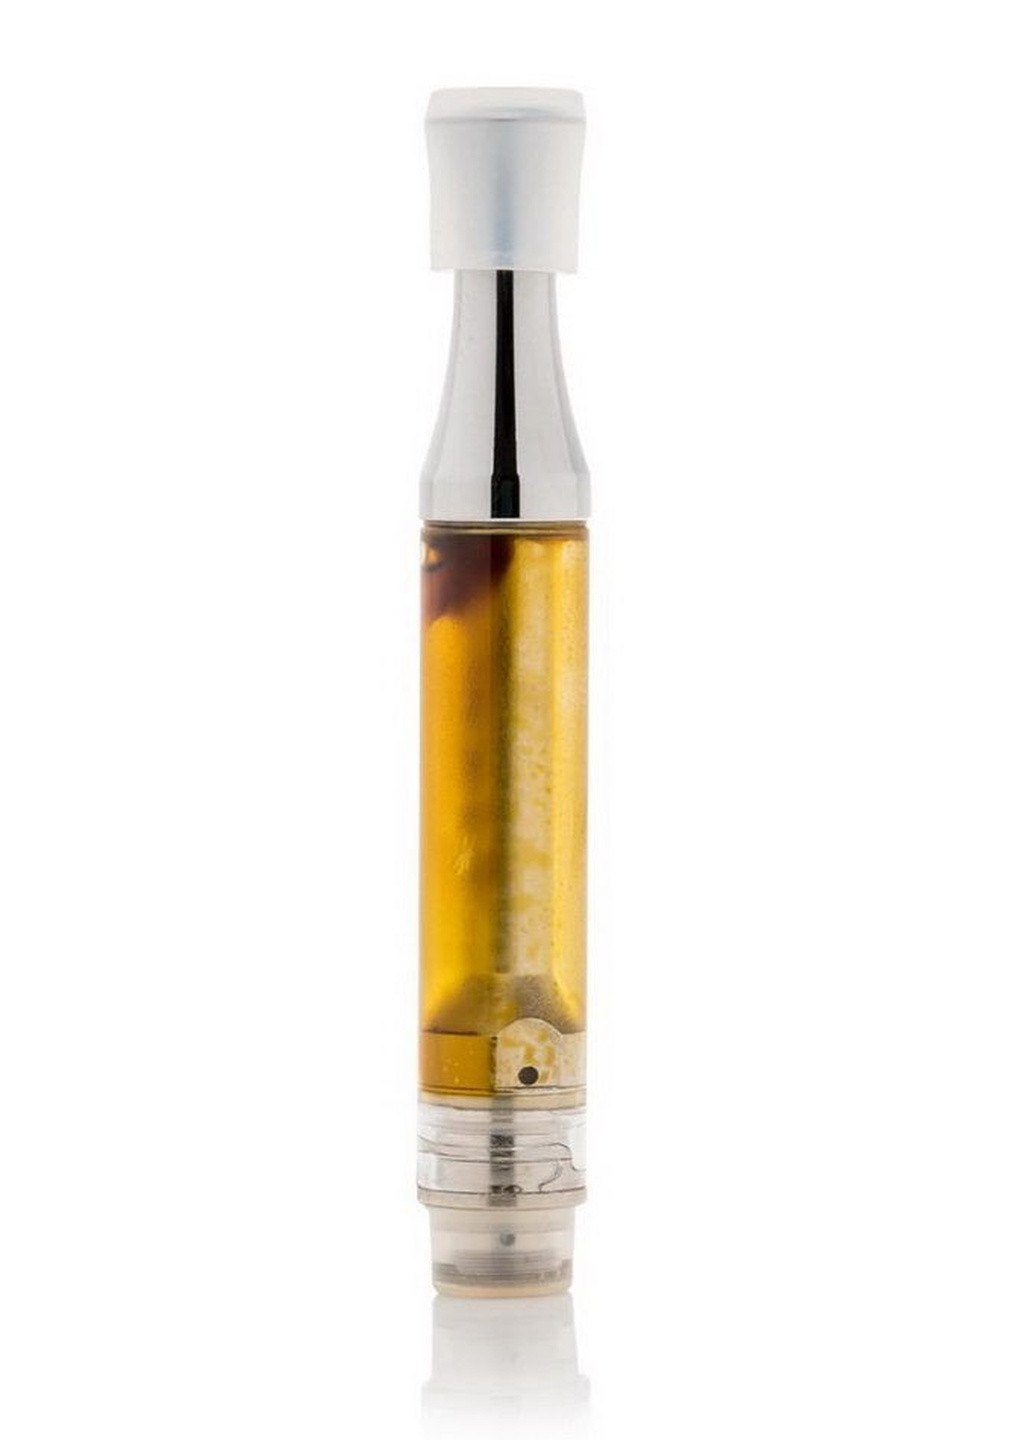 Картридж для электронной сигареты с CBD. 200mg CBD широкого спектра. 1ml картридж. 3 вкуса Neurogan (244492151)